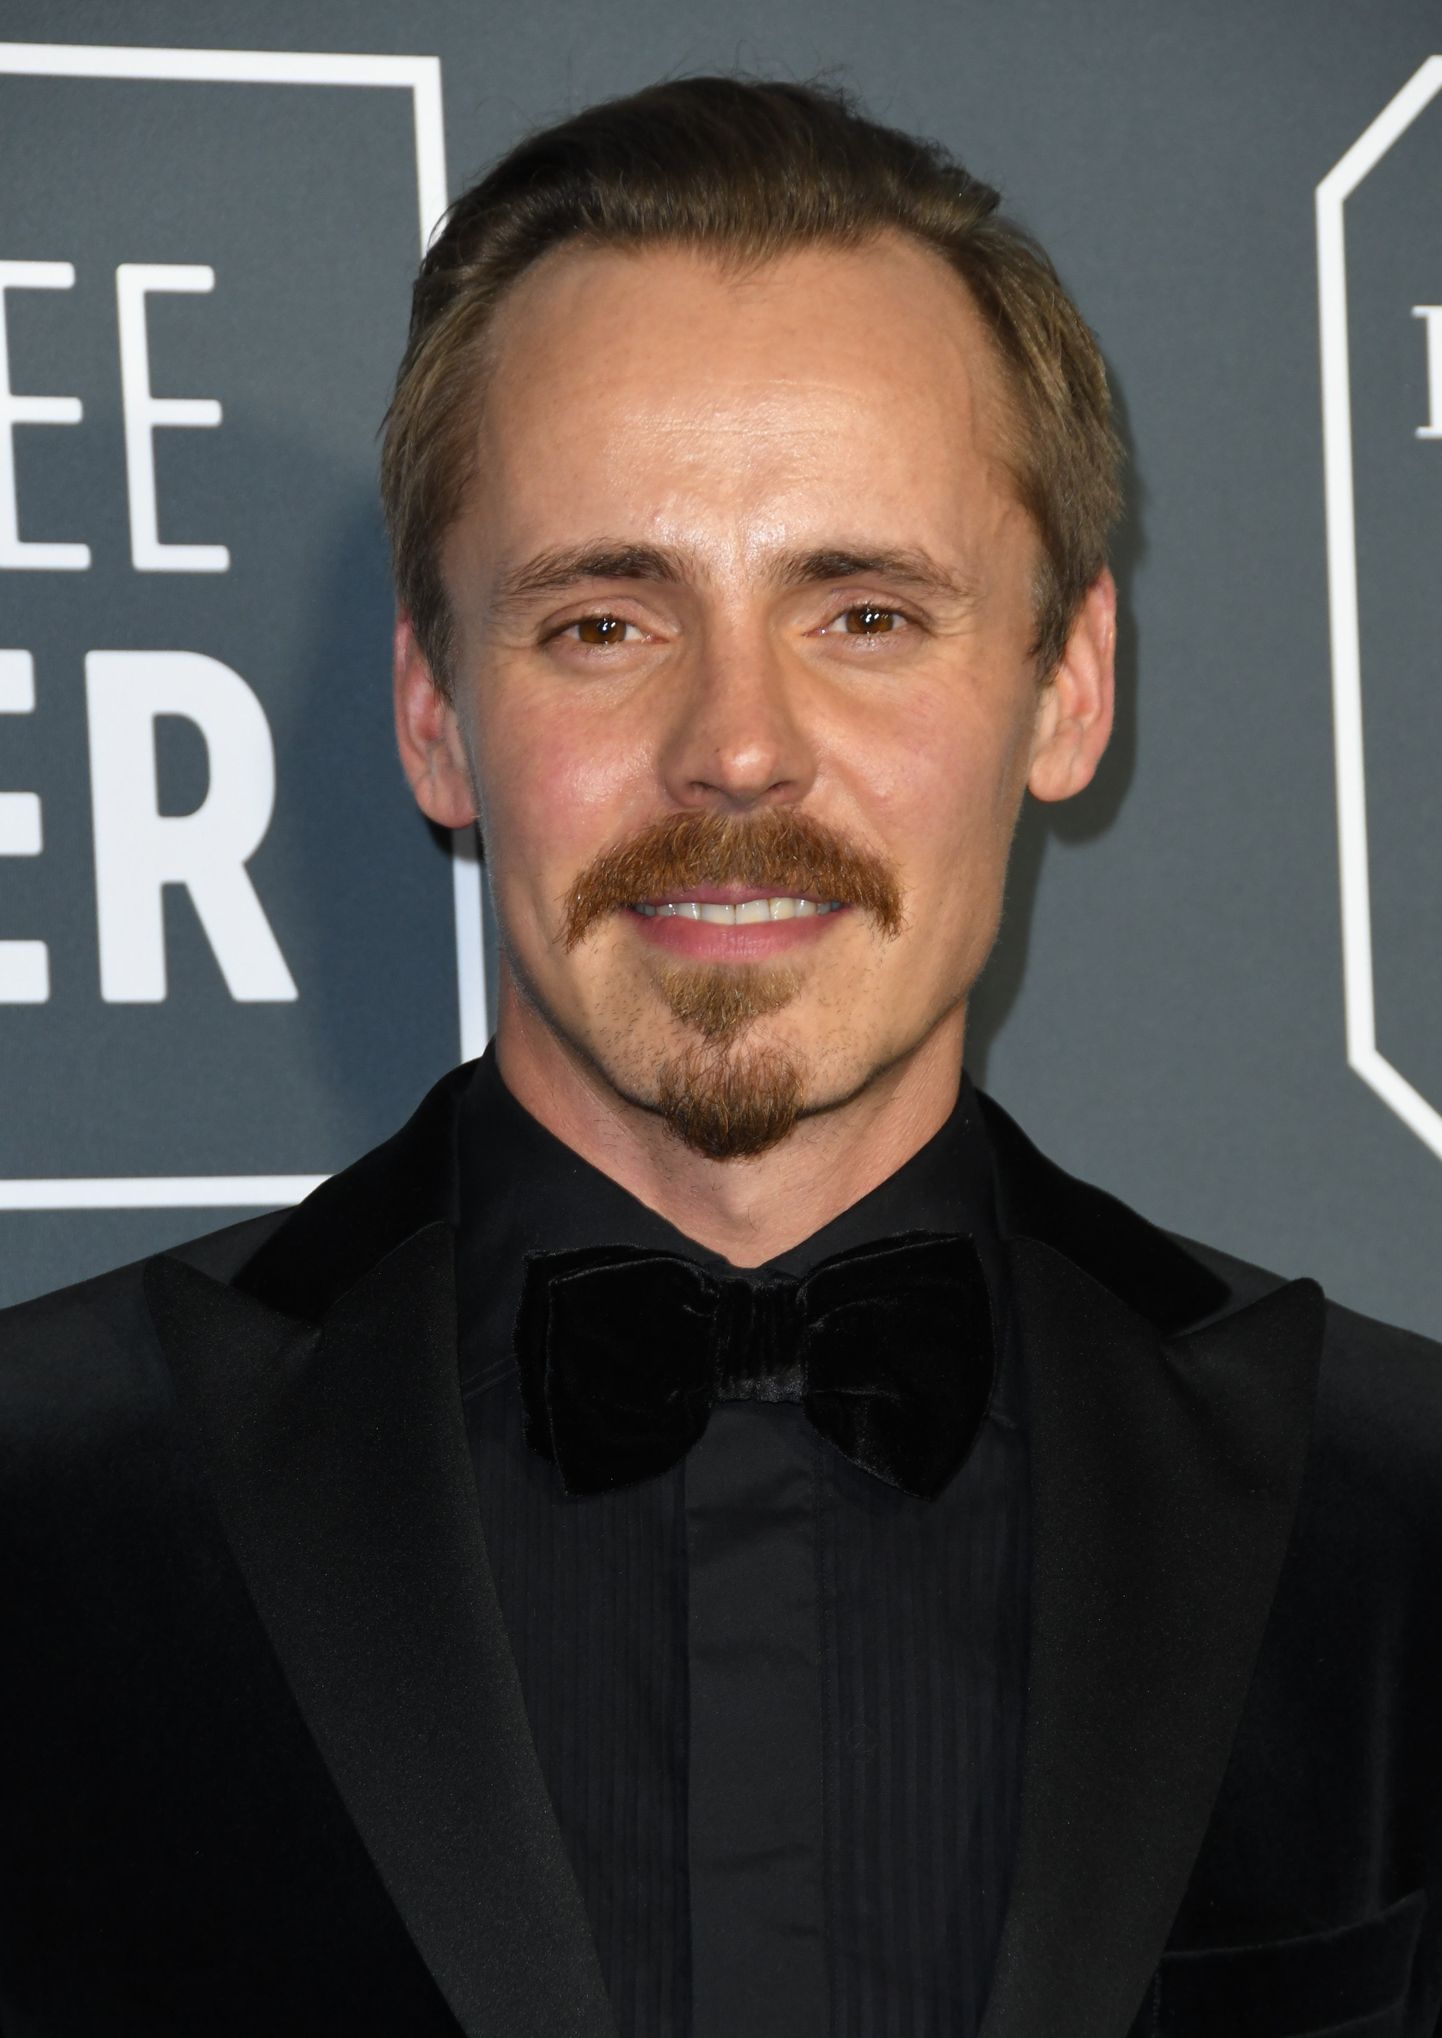 Soome näitleja Jasper Pääkkönen 13. jaanuaril 2019 USAs Californias Santa Monicas filmisündmusel